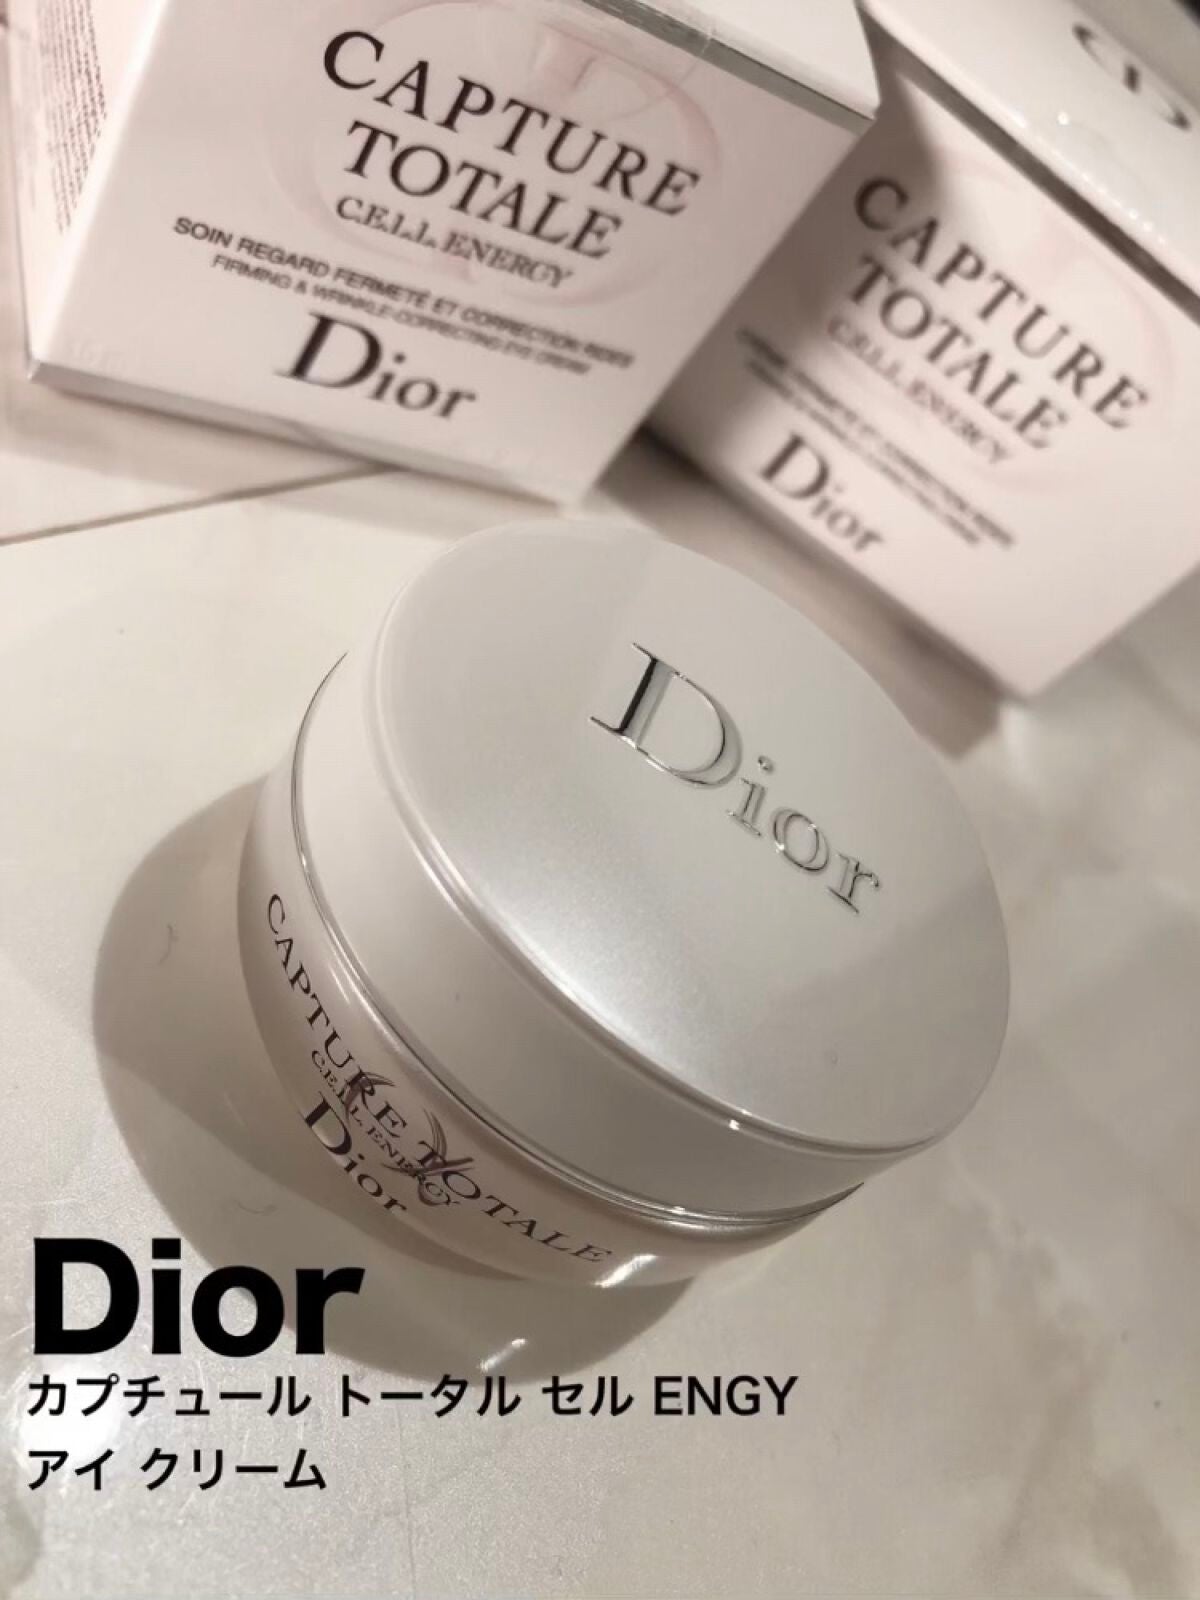 【新品・未開封】Dior カプチュール トータル★アイクリーム